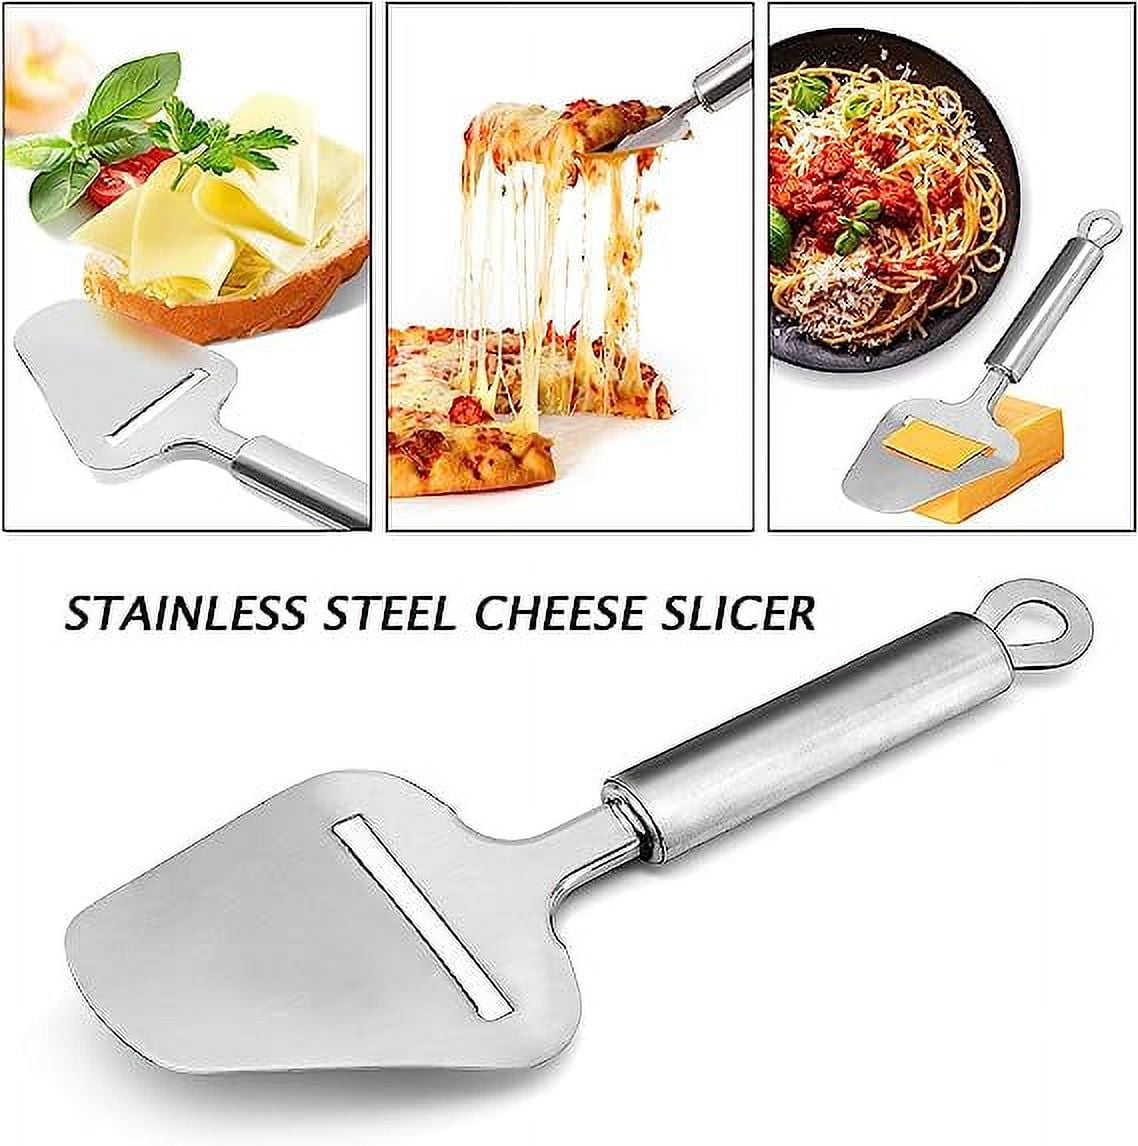 Cheese slicer stainless steel : Stellinox